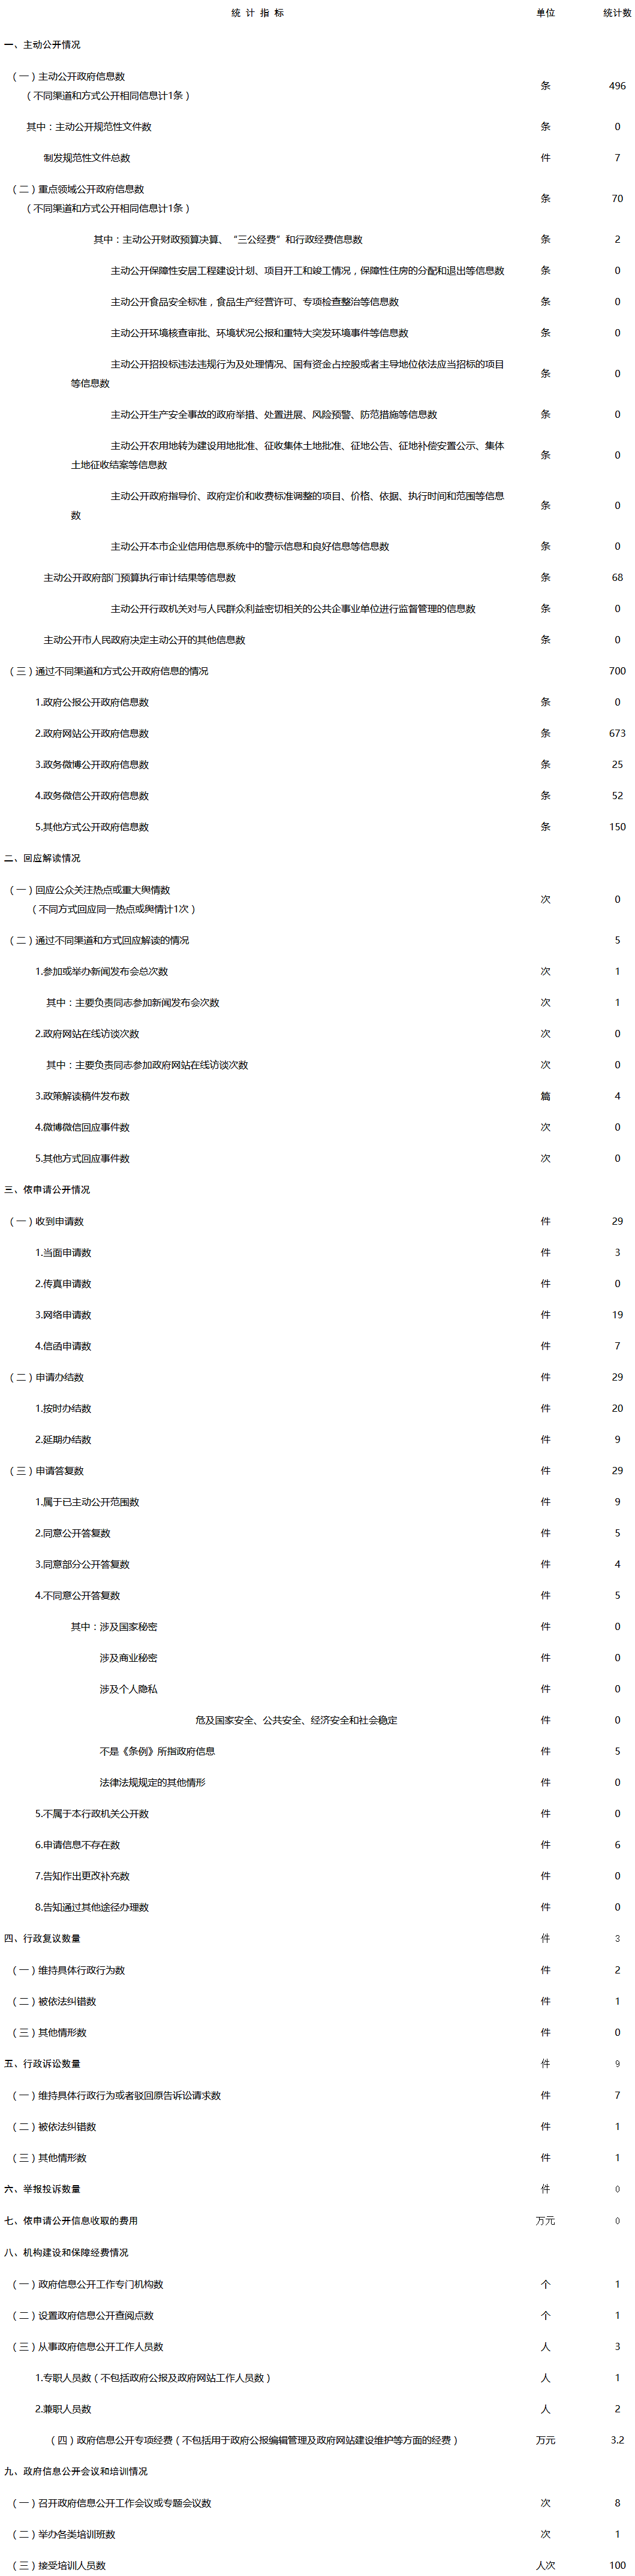 北京市审计局政府信息公开情况统计表(2017年度)